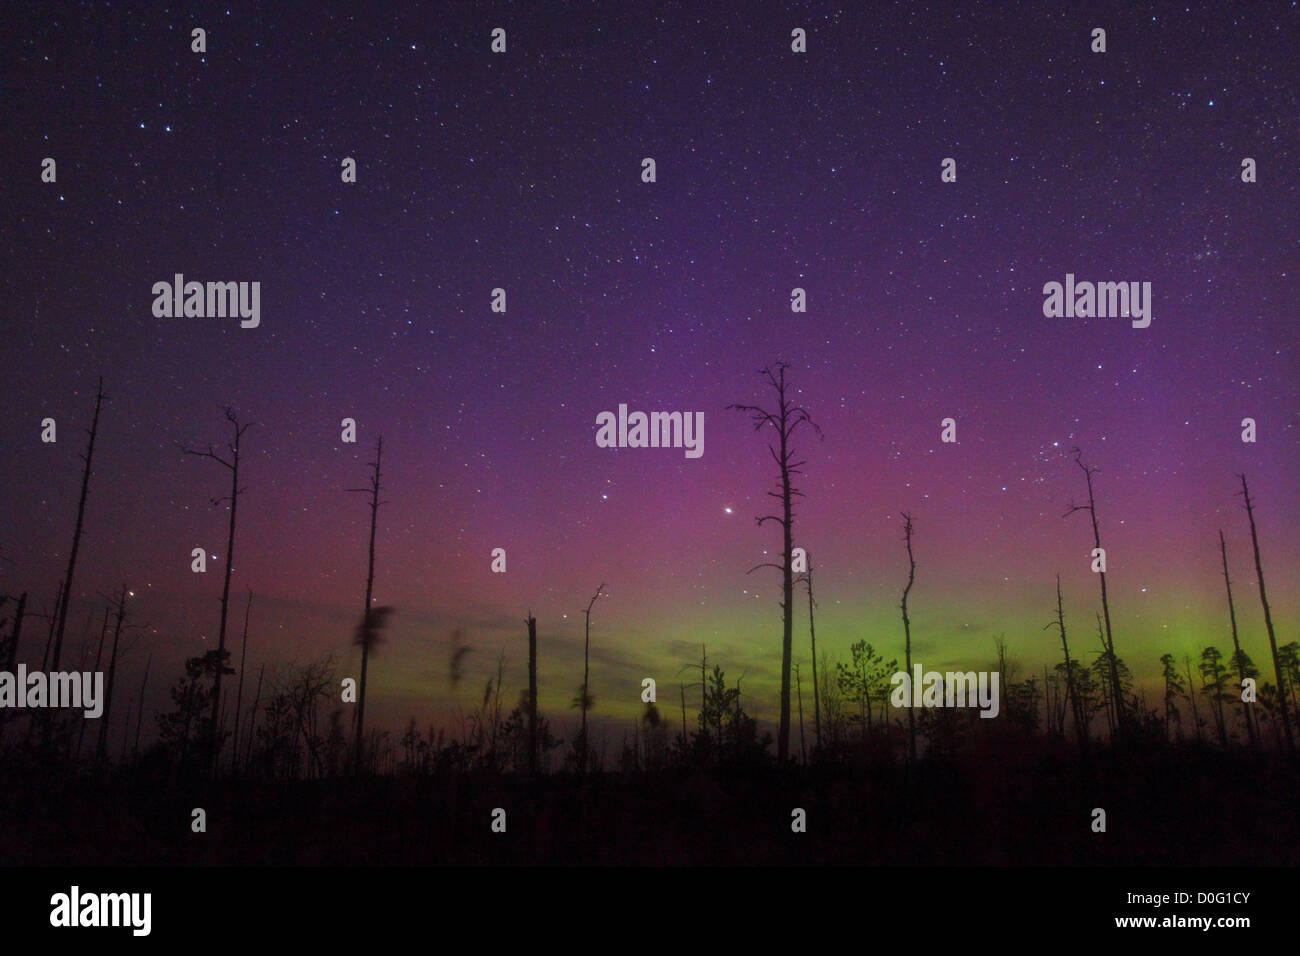 Nacht im Moor mit Bäumen und Nordlichter (Aurora Borealis) am Himmel. Estland, Europa, 14. April 2012. Stockfoto